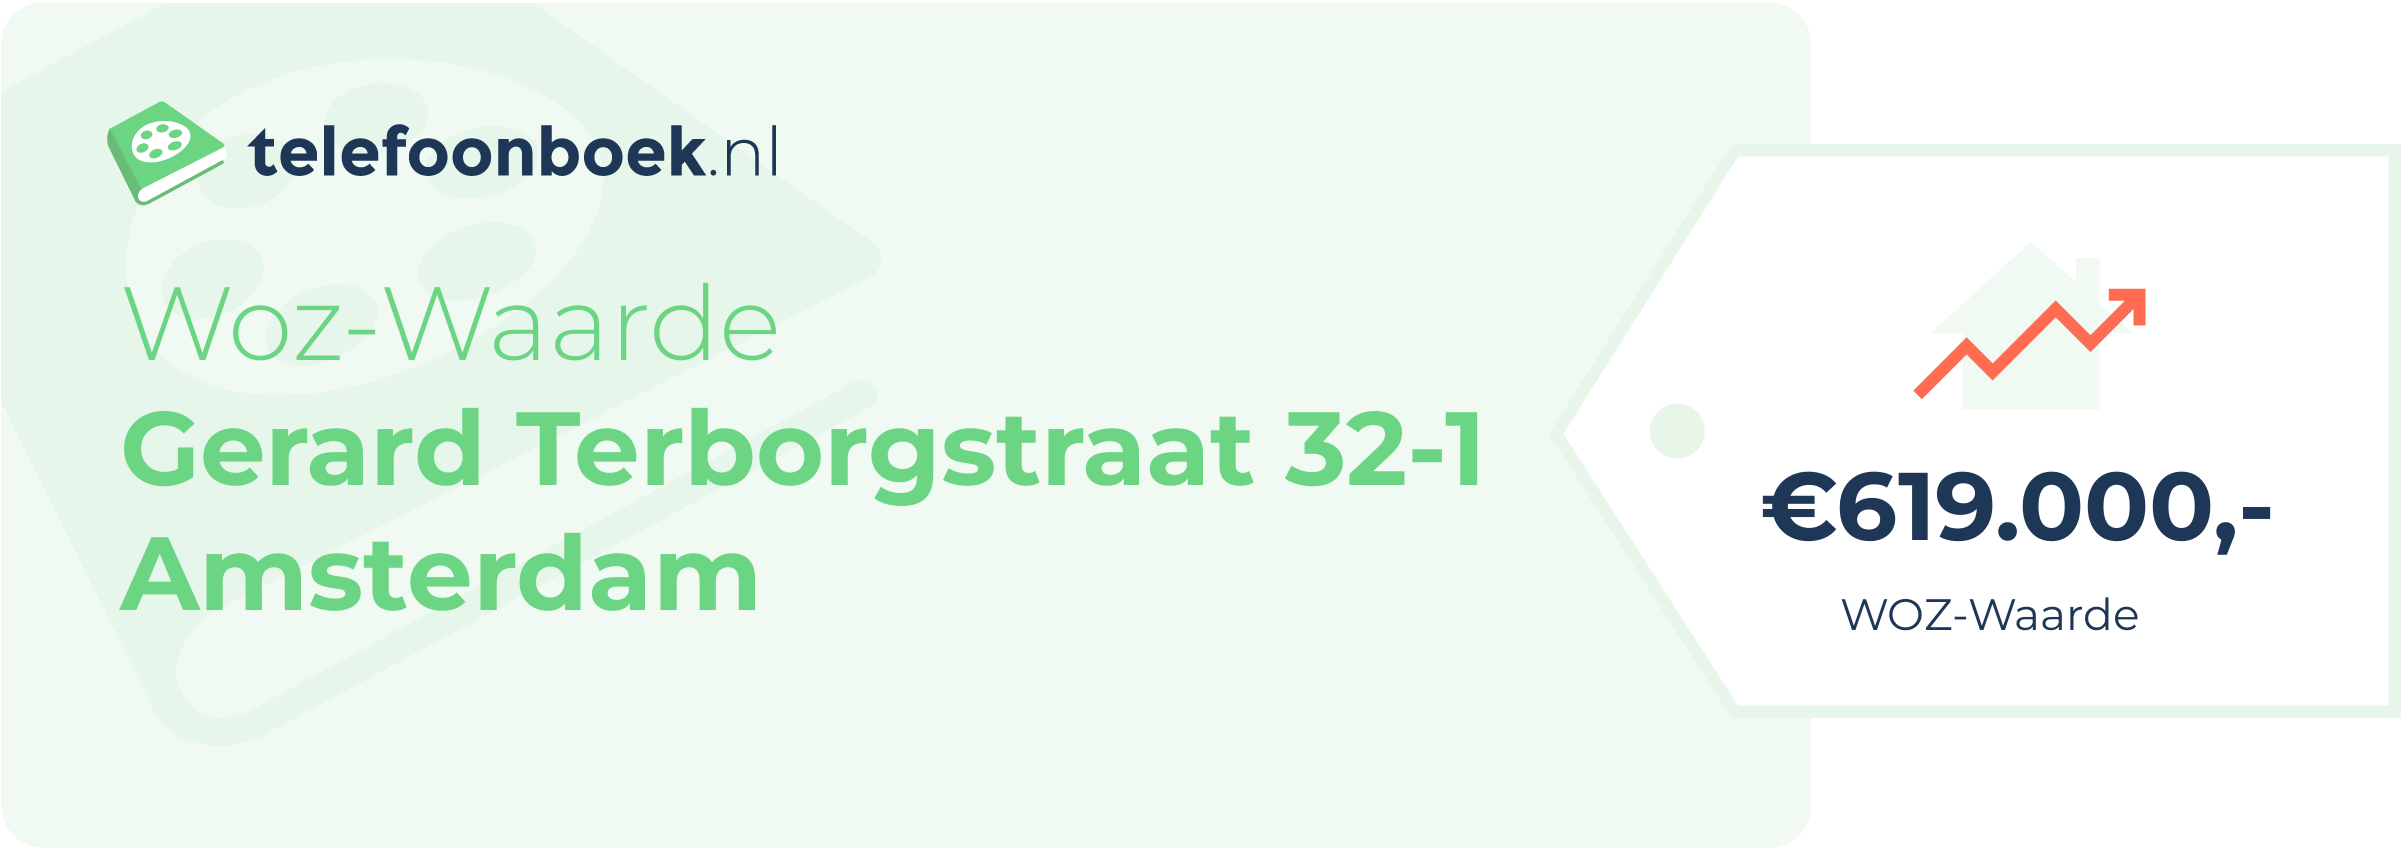 WOZ-waarde Gerard Terborgstraat 32-1 Amsterdam